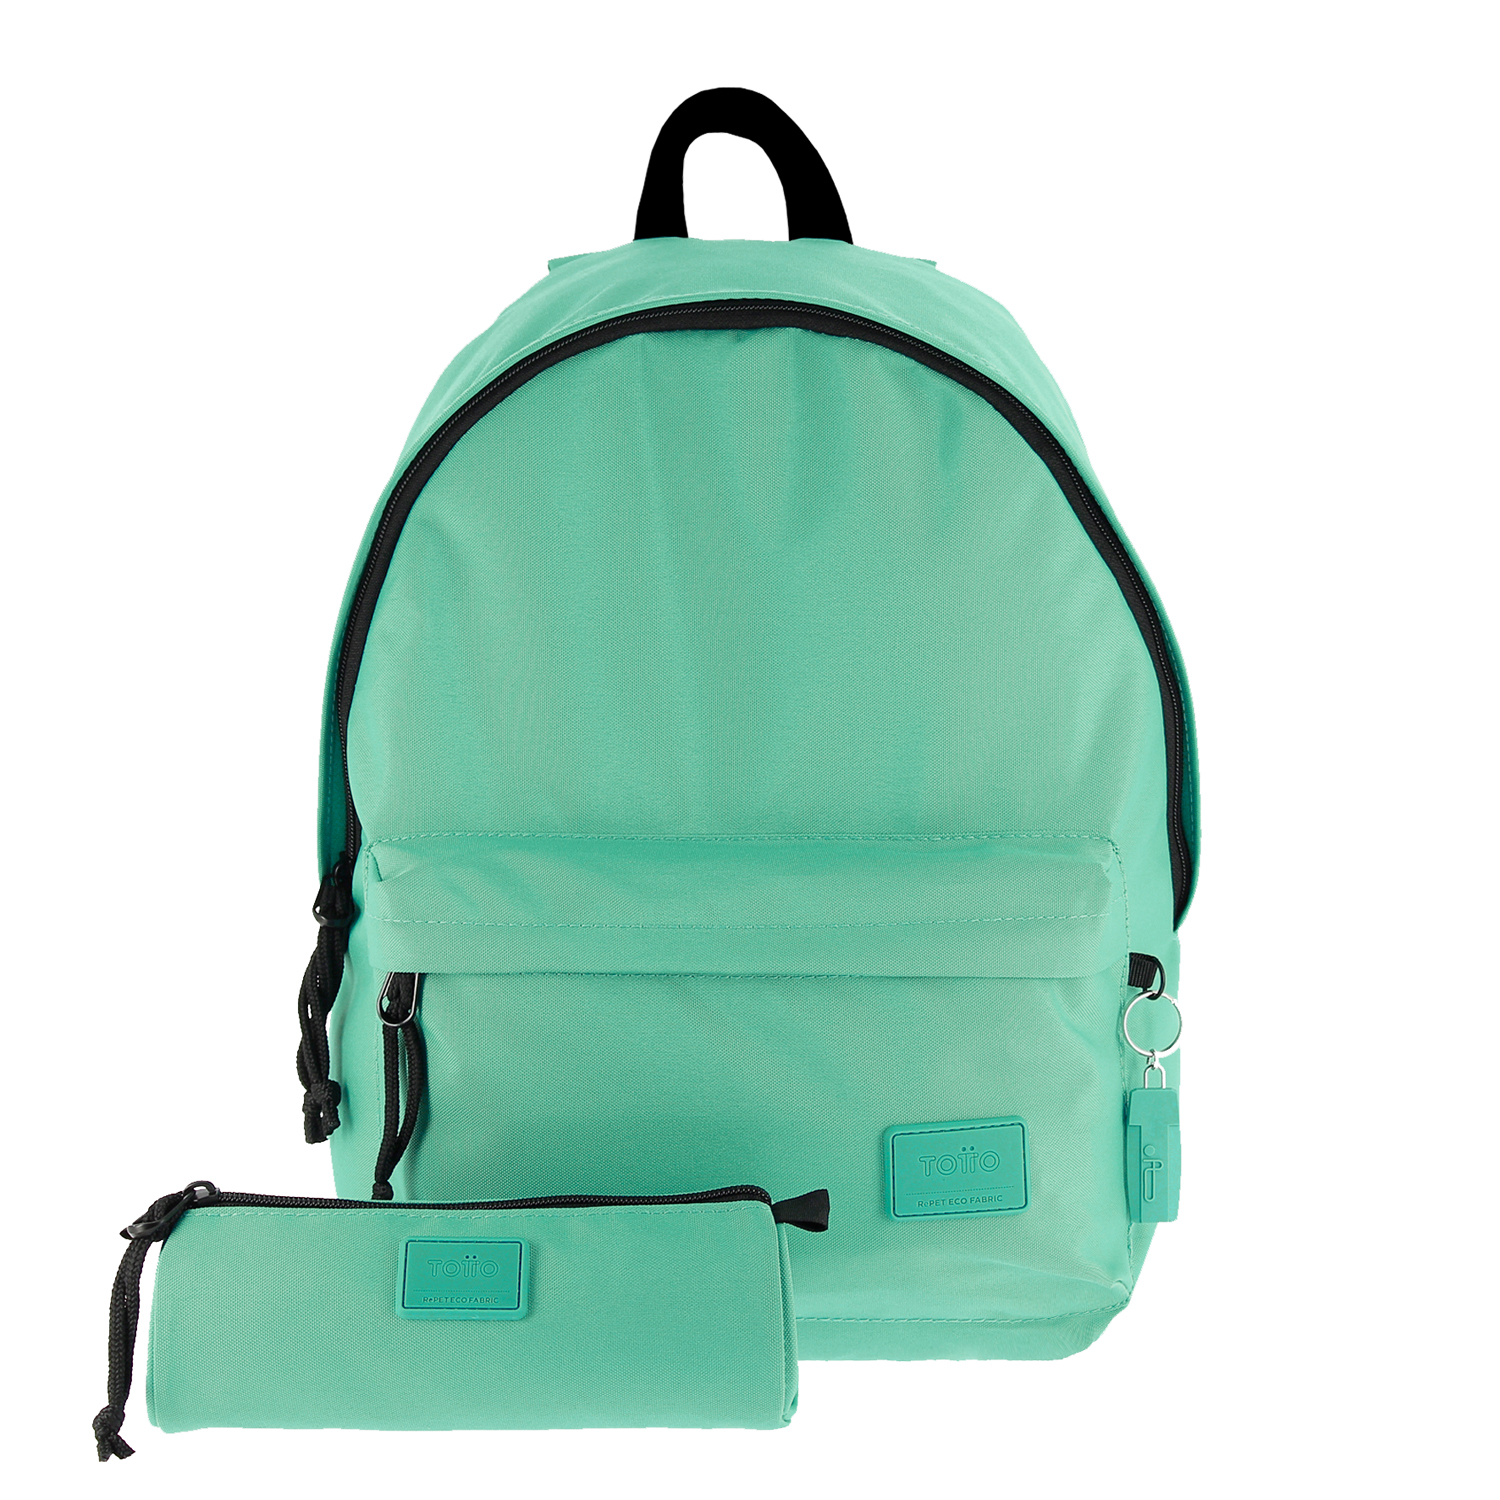 Pack mochila + estuche color verde y gris - Kalex